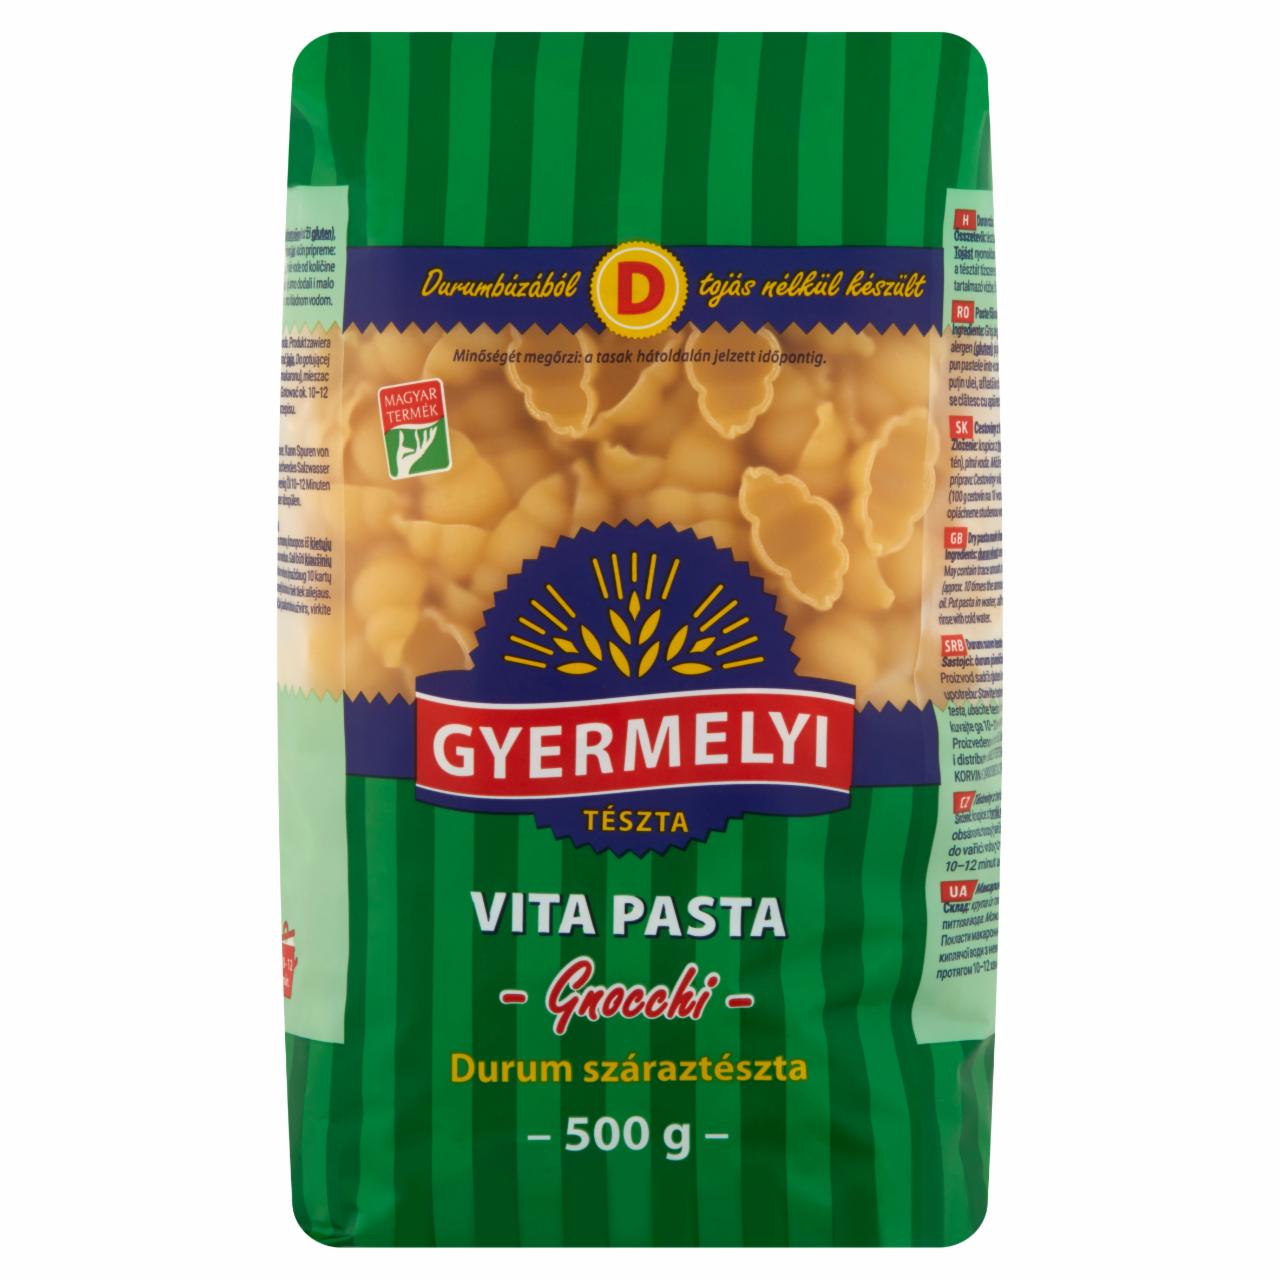 Képek - Gyermelyi Vita Pasta Gnocchi durum száraztészta 500 g